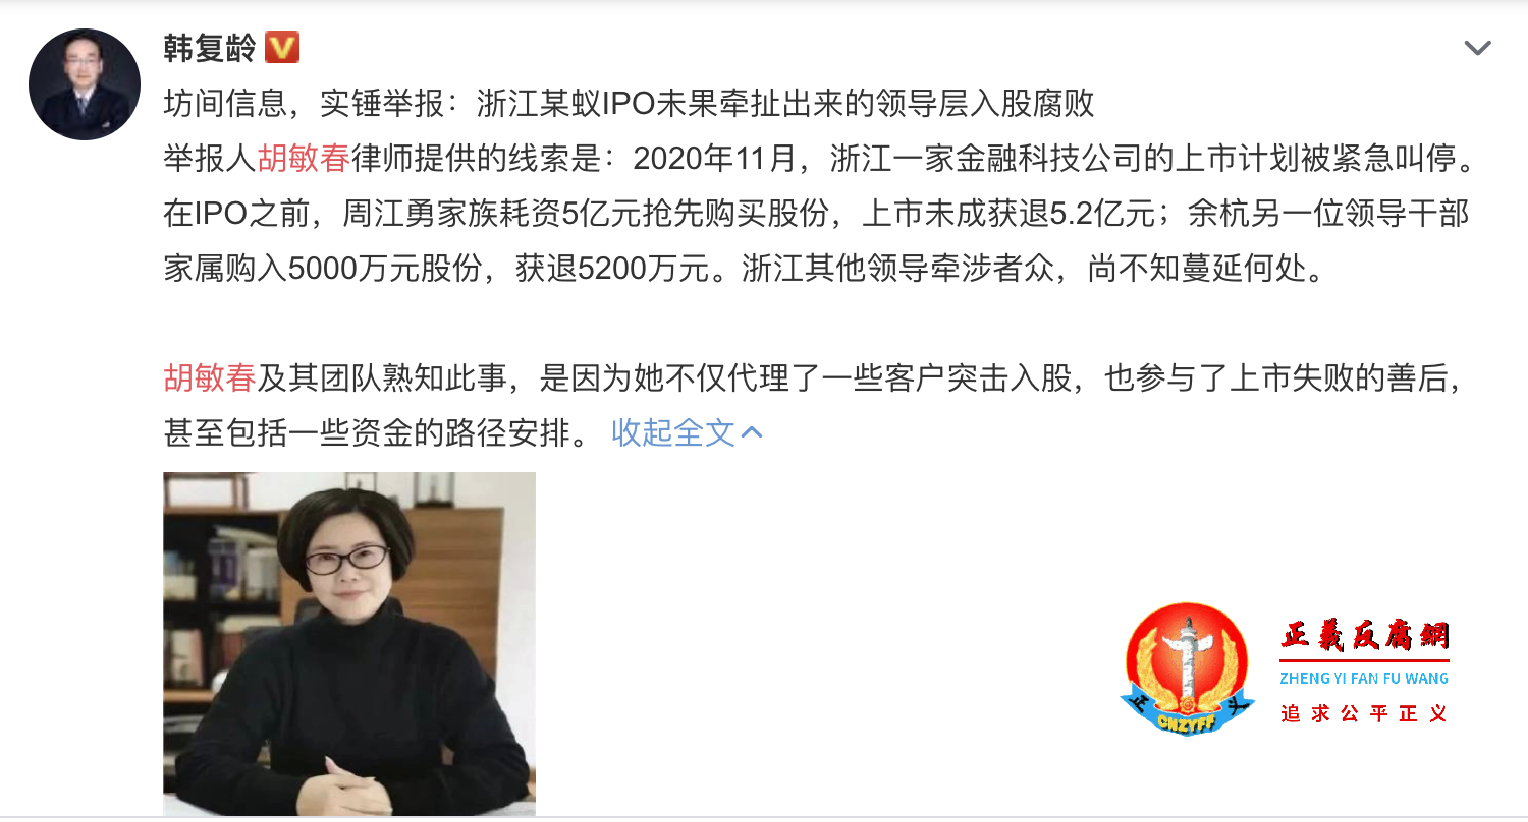 微博披露这一波浙江官场周江勇落马与女律师的检举有关。.png